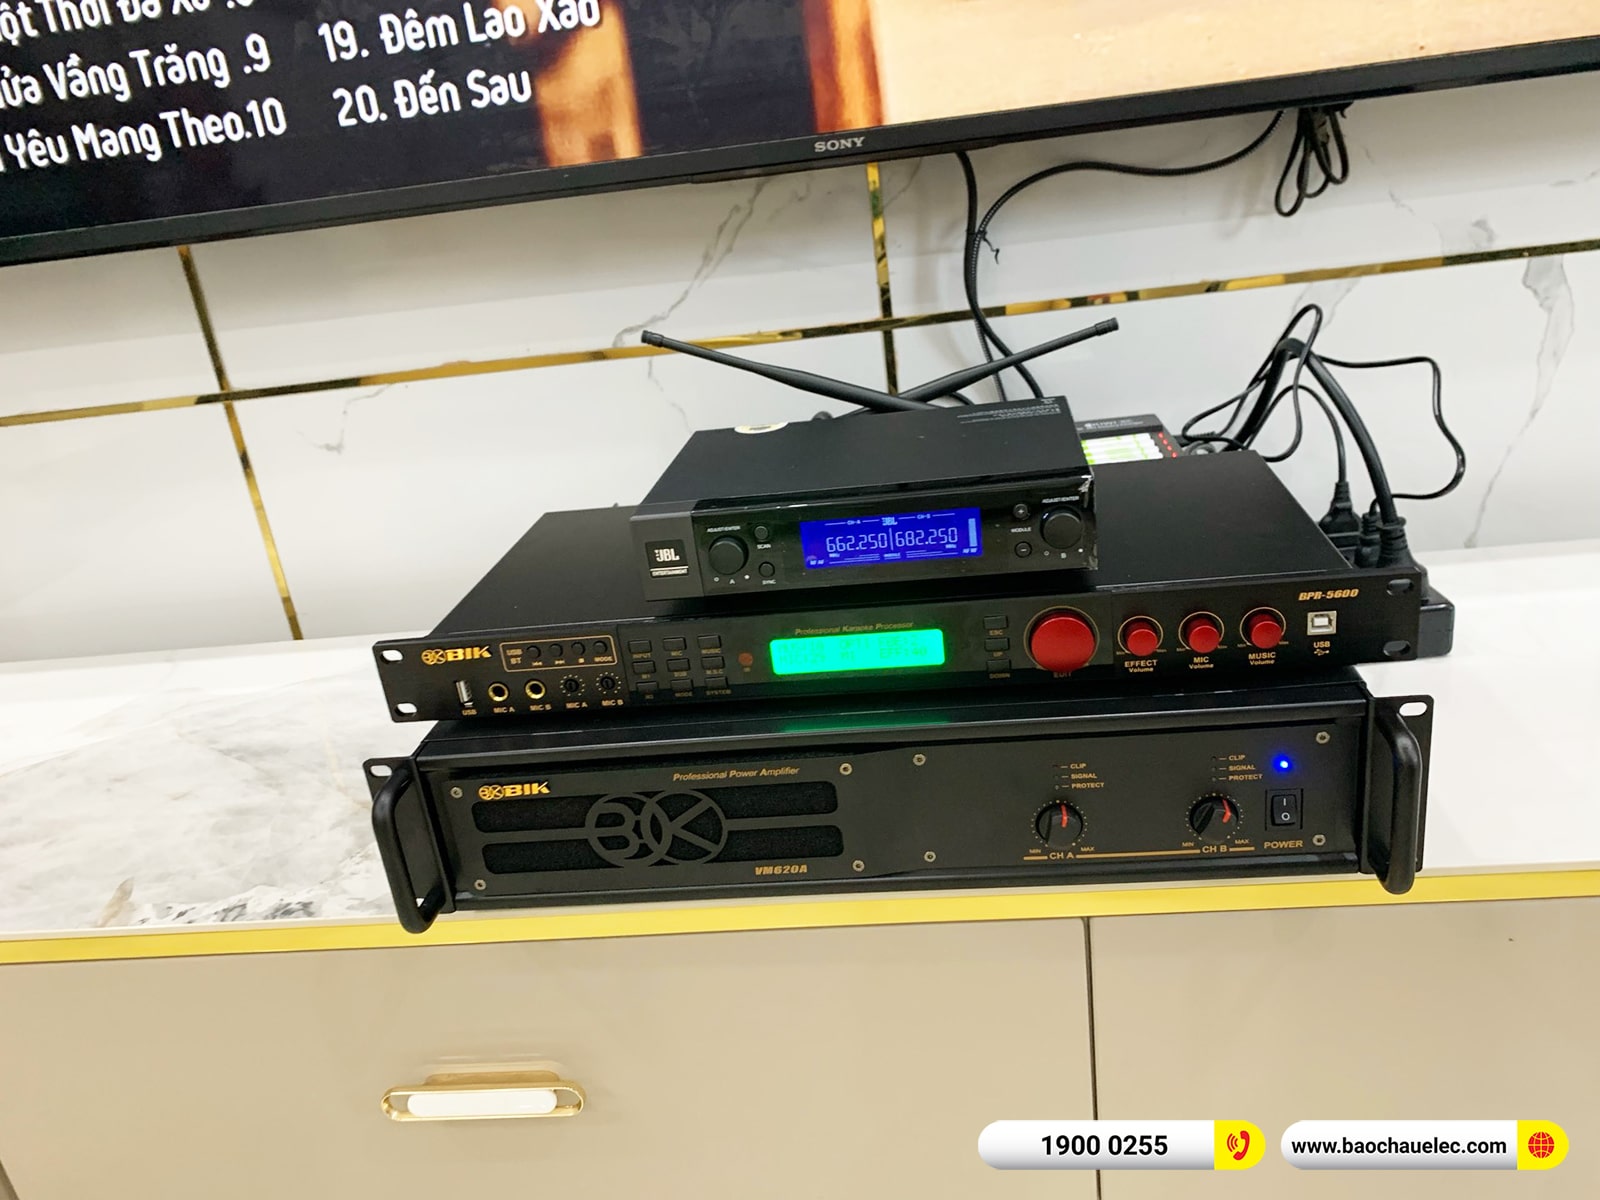 Lắp đặt dàn karaoke RCF hơn 67tr cho anh Vũ tại Quảng Nam (RCF X-Max 12, VM620A, BPR-5600, A120P, VM200) 